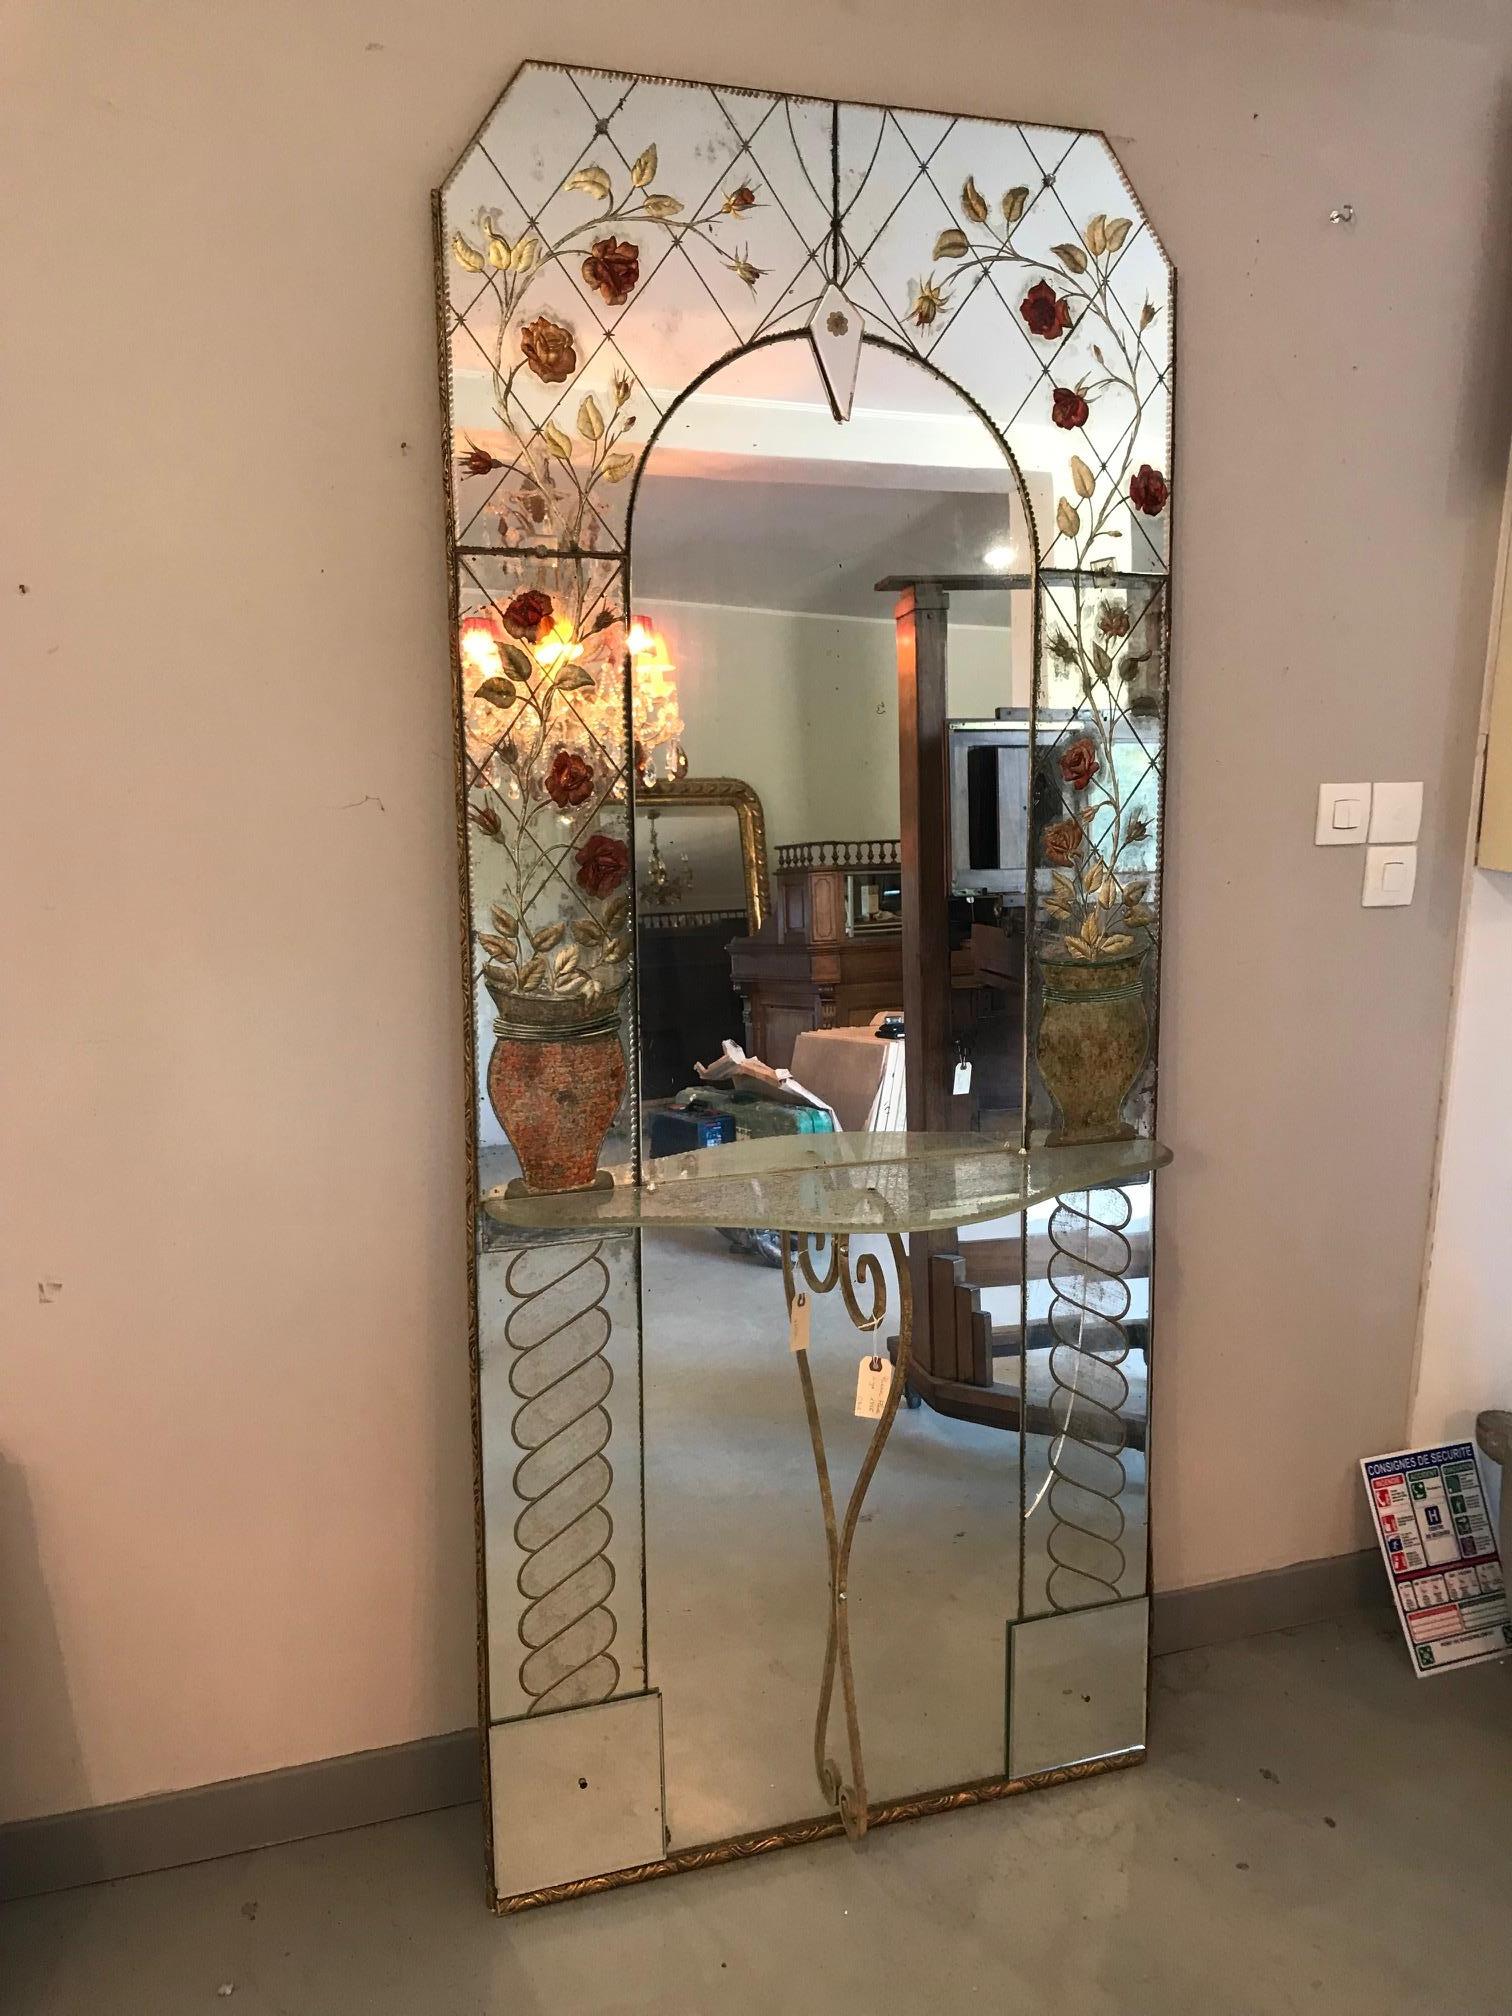 Schöner venezianischer Bodenspiegel aus dem 20. Jahrhundert, signiert von Villeponge aus den 1956er Jahren.
Roses Glasdekoration. Glasablage mit weißem Eisenfuß.
Sehr empfindliches Spiegelglas. Seltener Spiegel. Handschriftliche Unterschrift